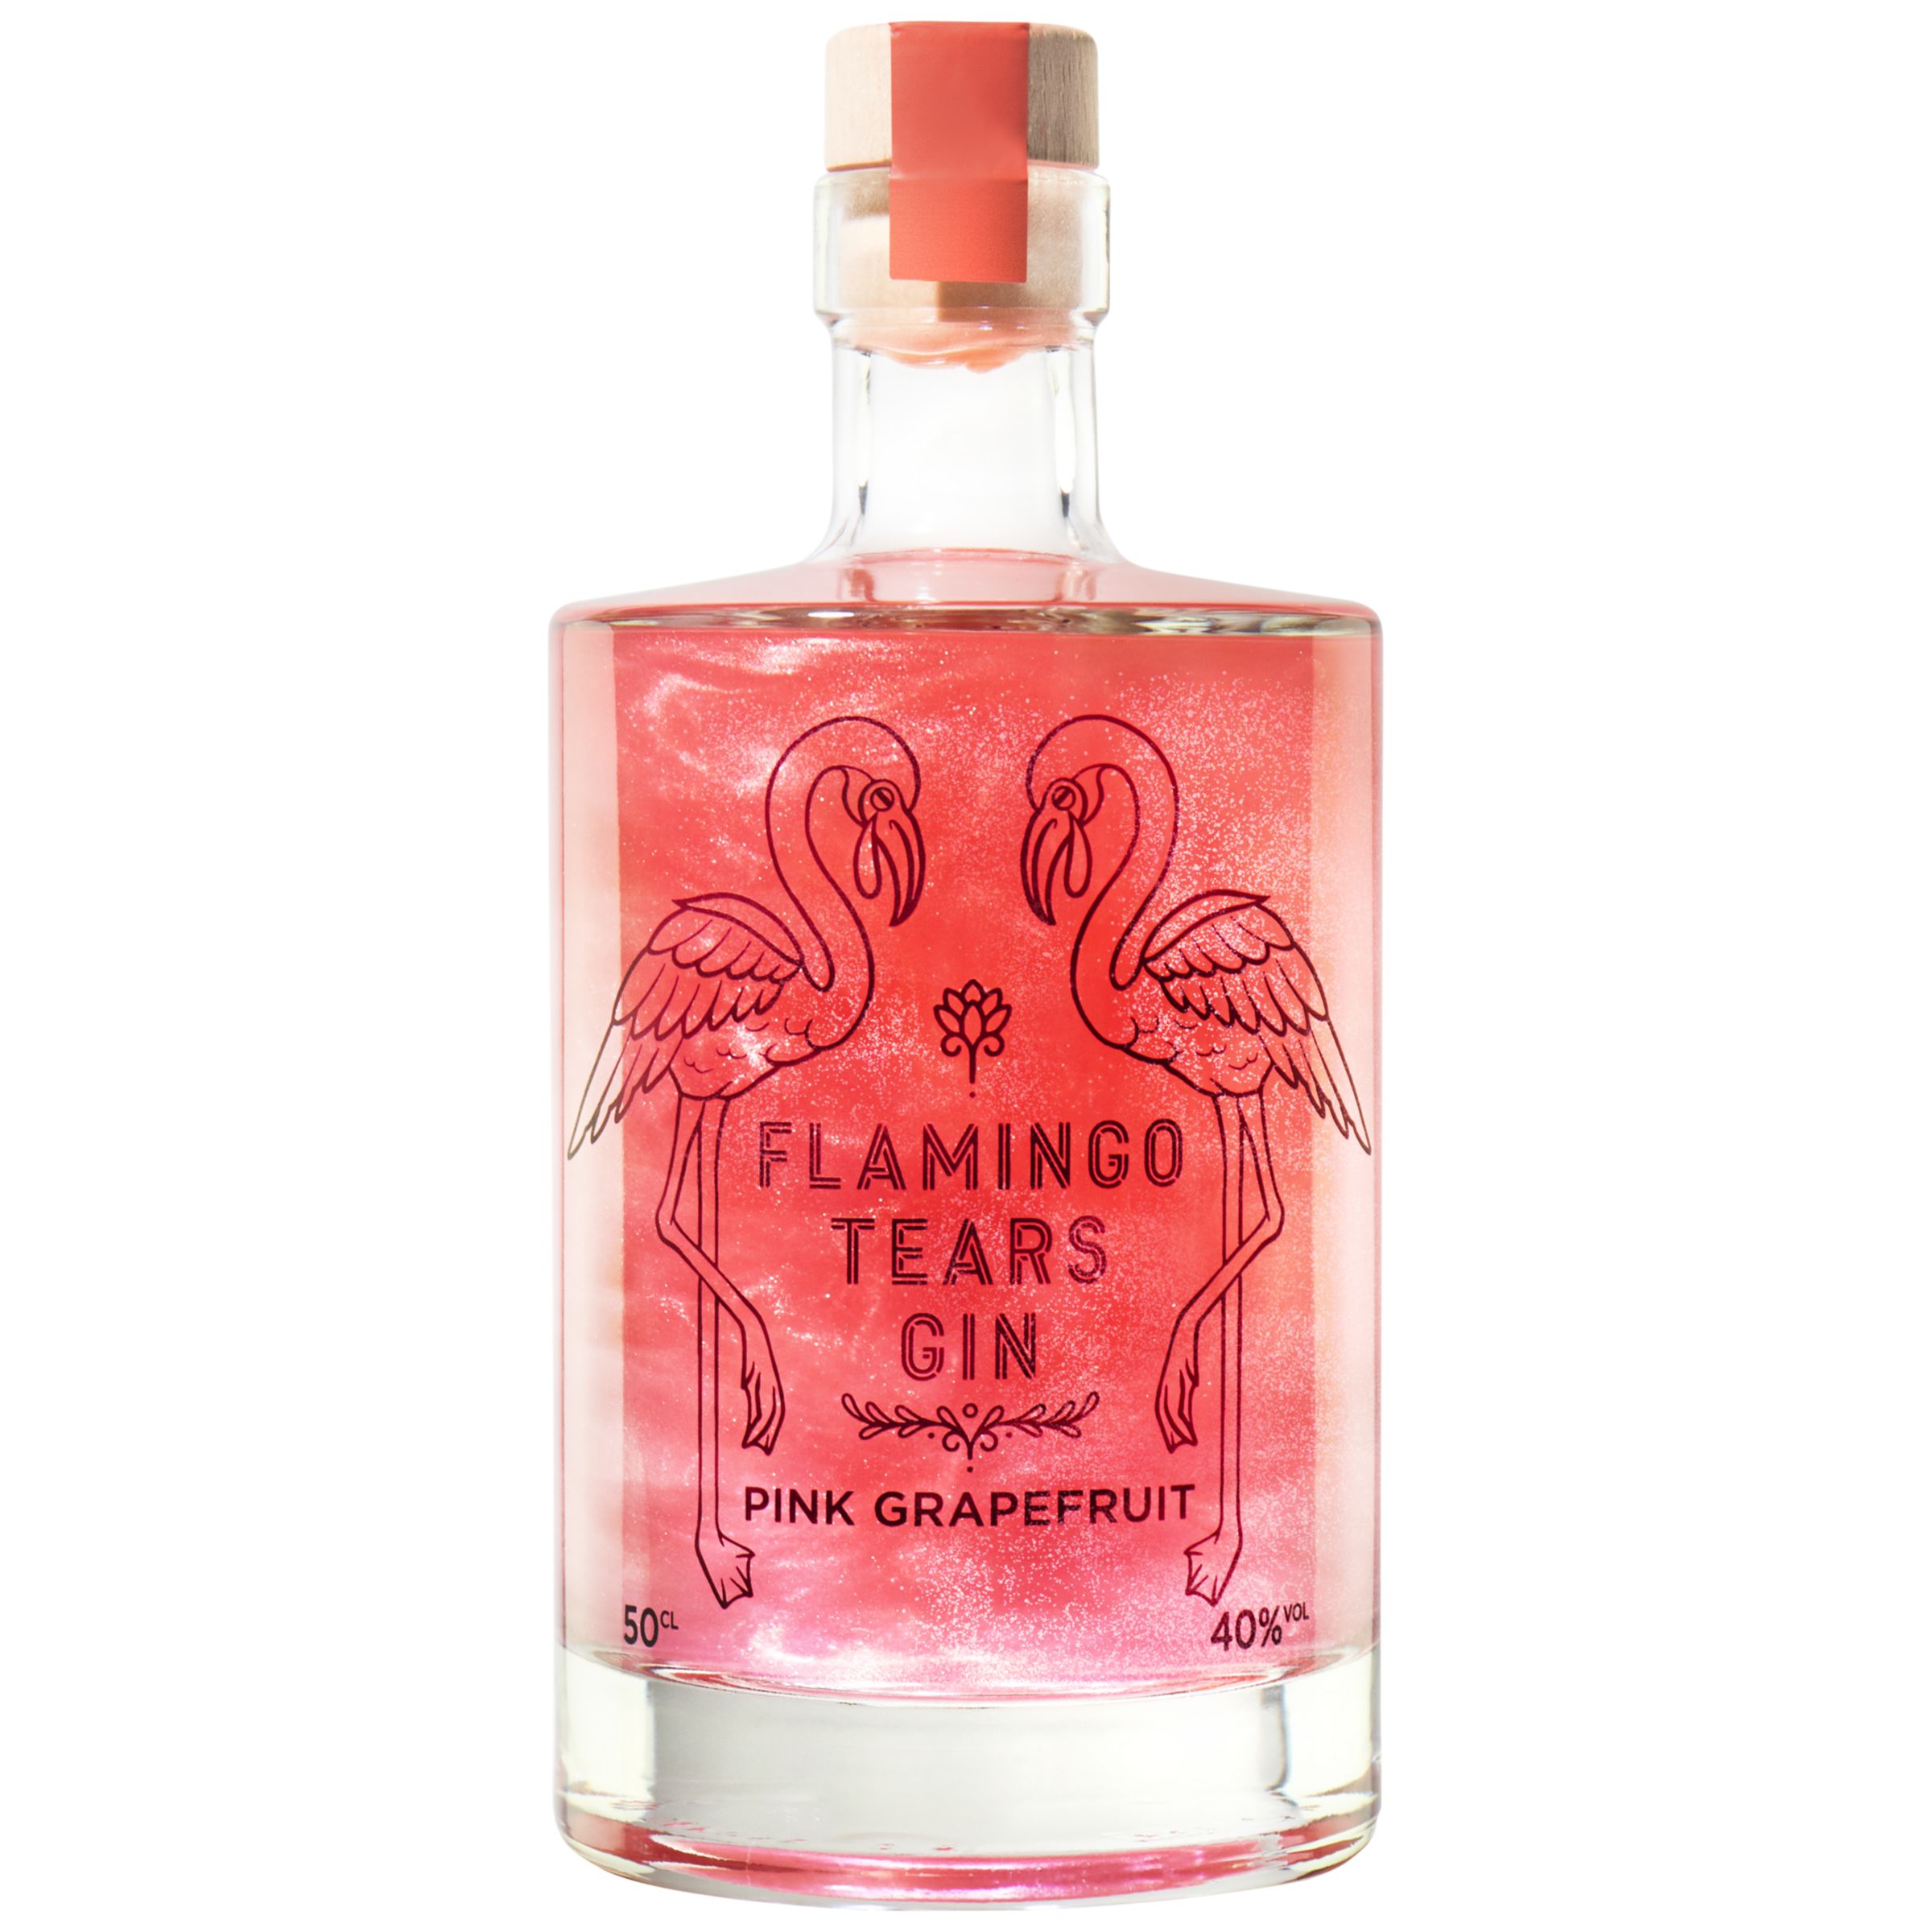 Begrenzte Zeit zum Schnäppchenpreis Firebox Flamingo Tears Pink 50cl Grapefruit Gin